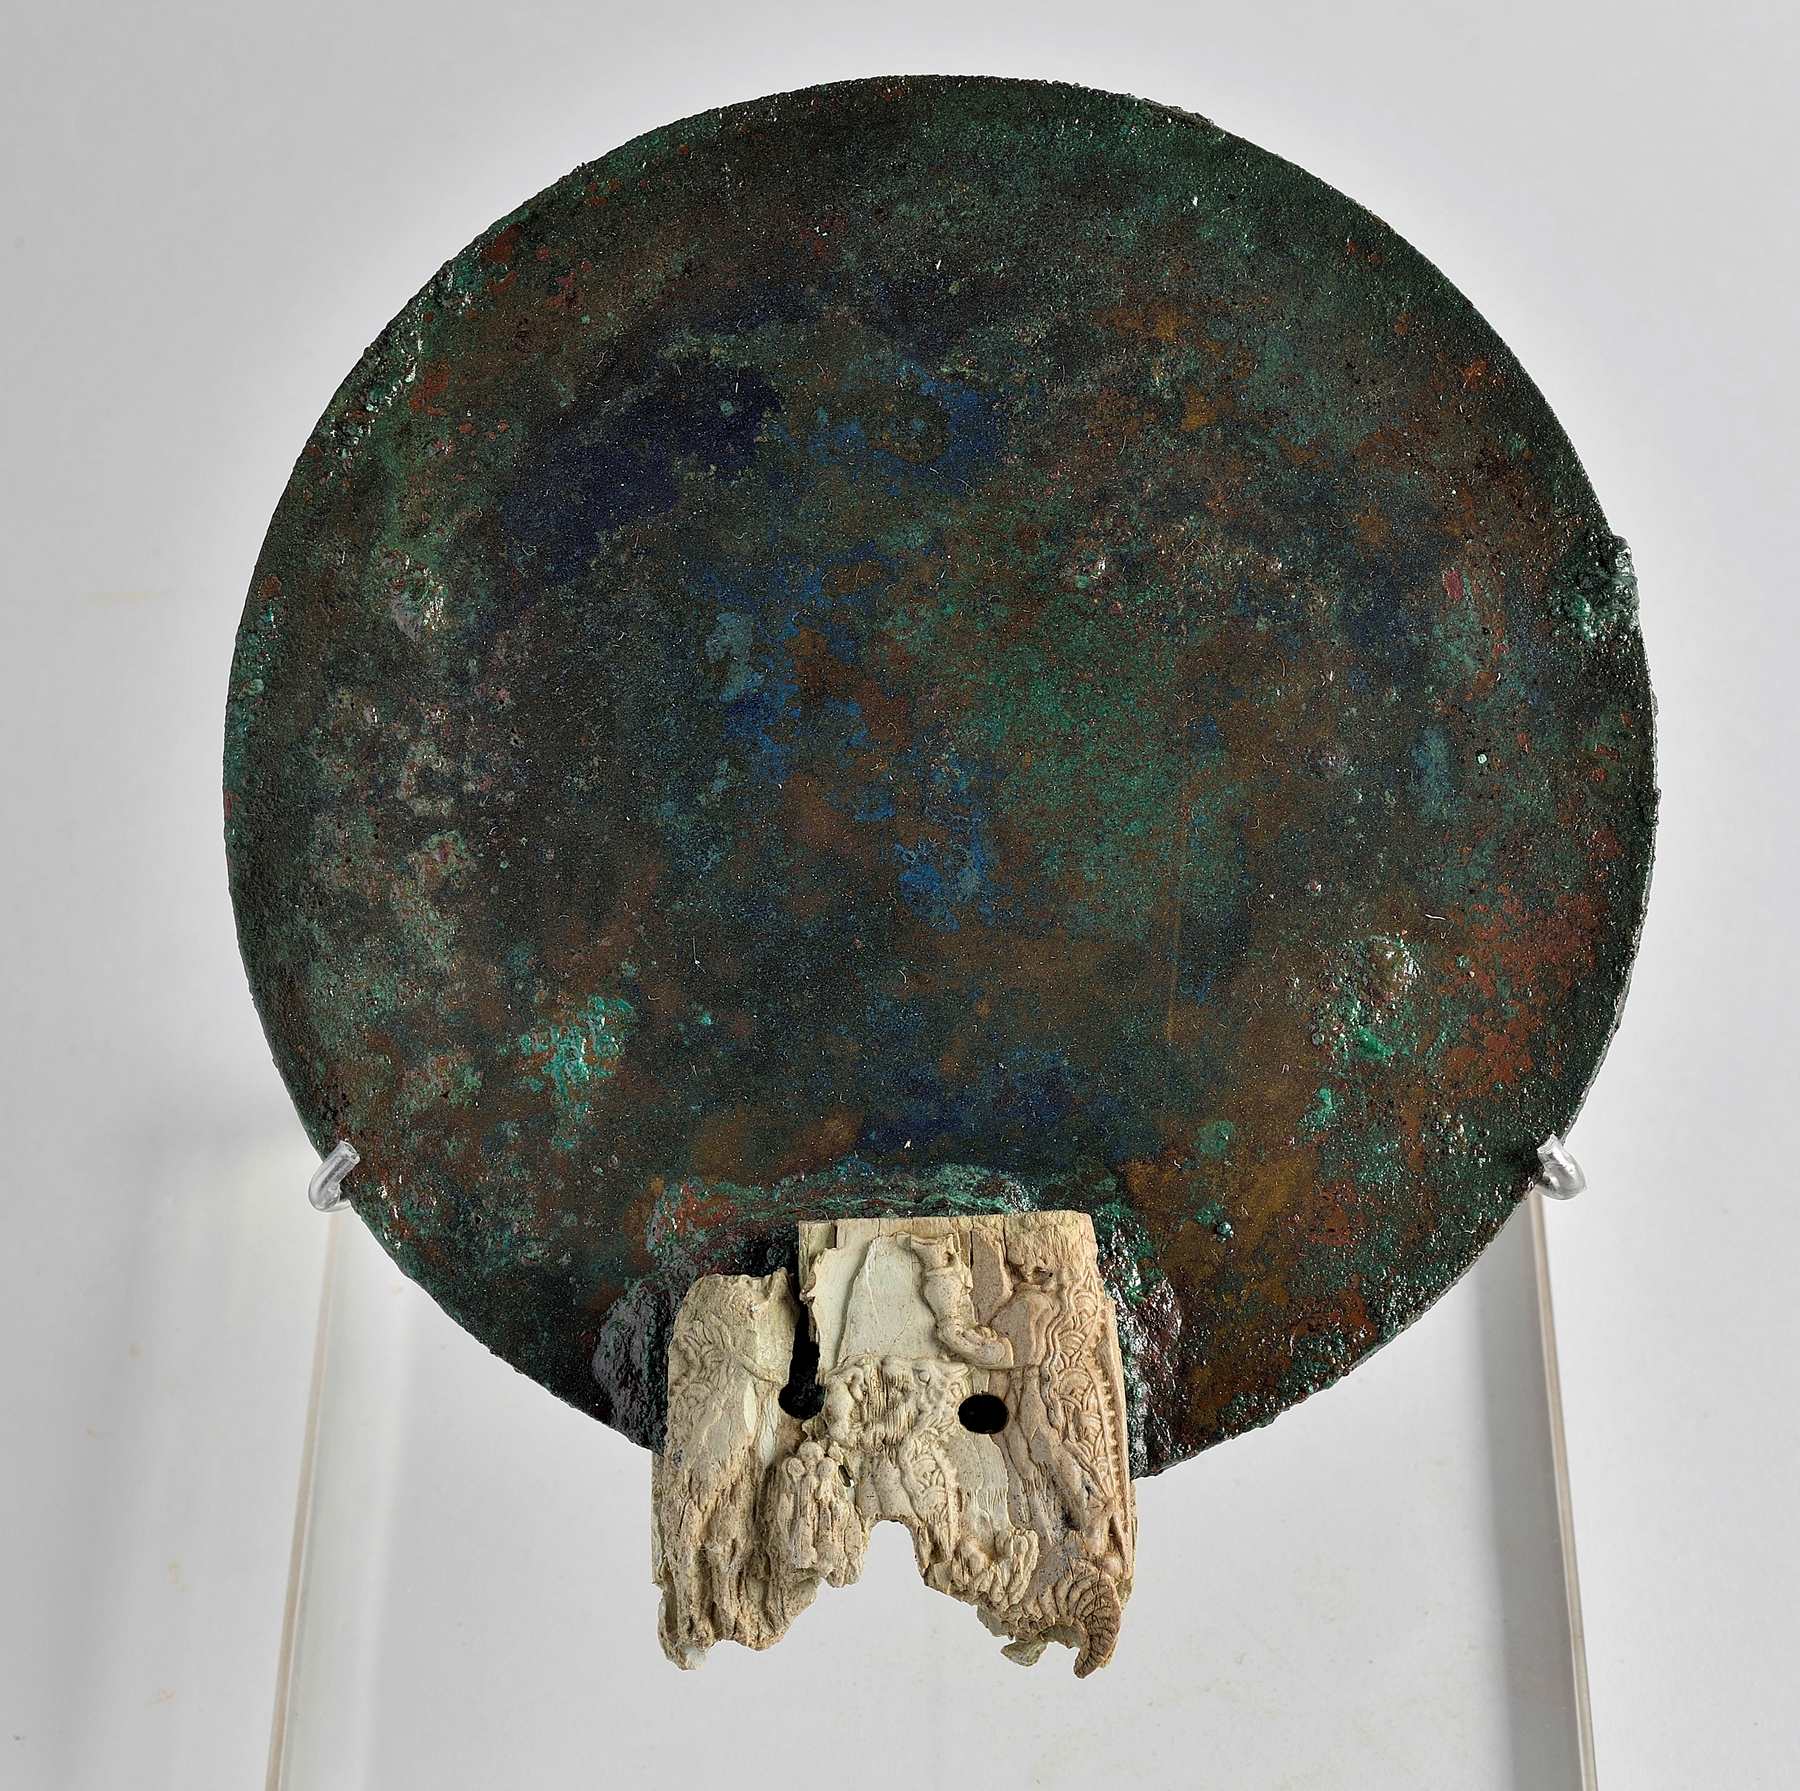 Χάλκινος καθρέφτης με οστέινη λαβή κοσμημένη με δαιμονικά όντα. Παγκαλοχώρι Ρεθύμνου 1380 1300 π.Χ